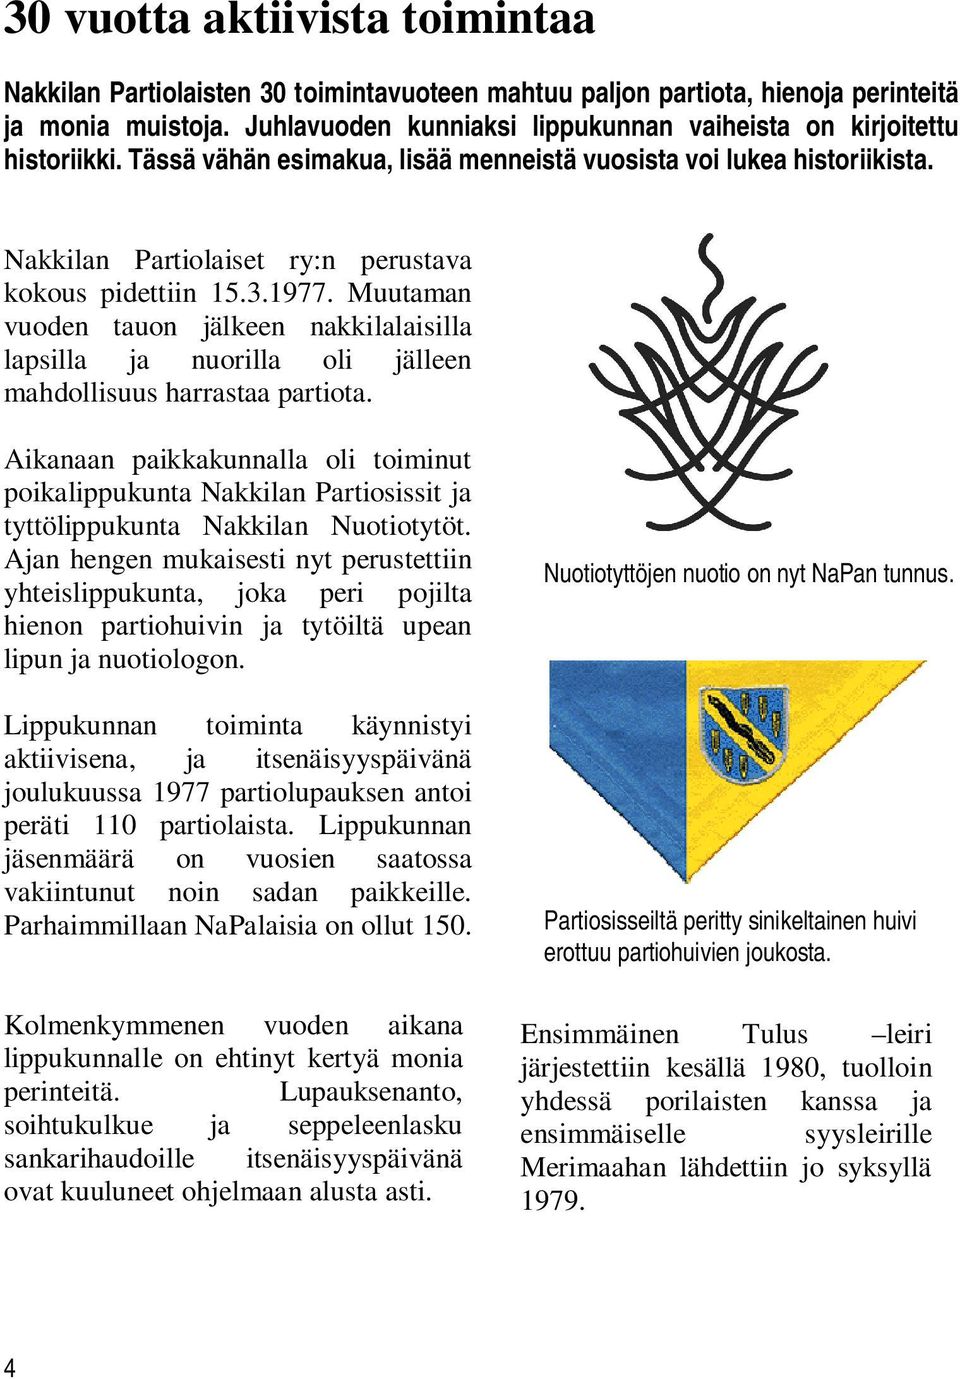 Nakkilan Partiolaiset ry:n perustava kokous pidettiin 15.3.1977. Muutaman vuoden tauon jälkeen nakkilalaisilla lapsilla ja nuorilla oli jälleen mahdollisuus harrastaa partiota.